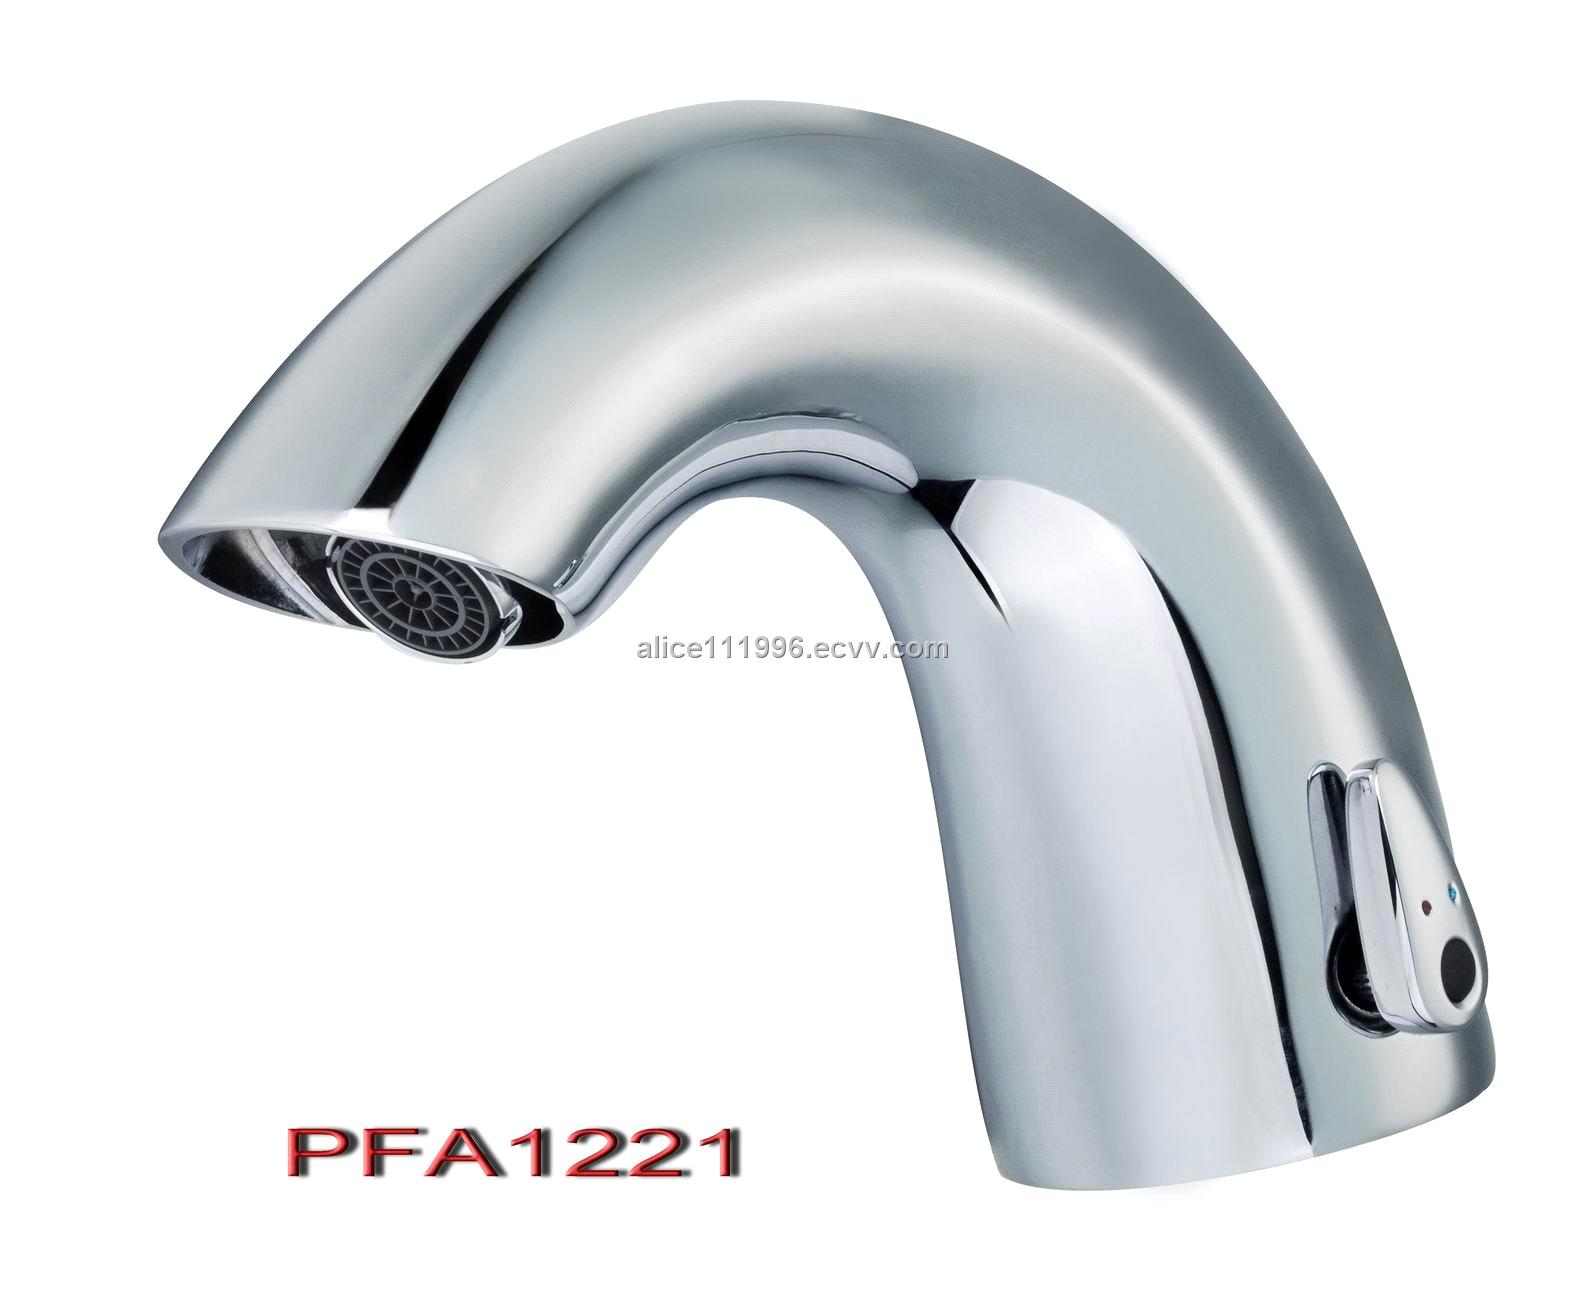 Automatic Sensor Faucet (PFA1221)